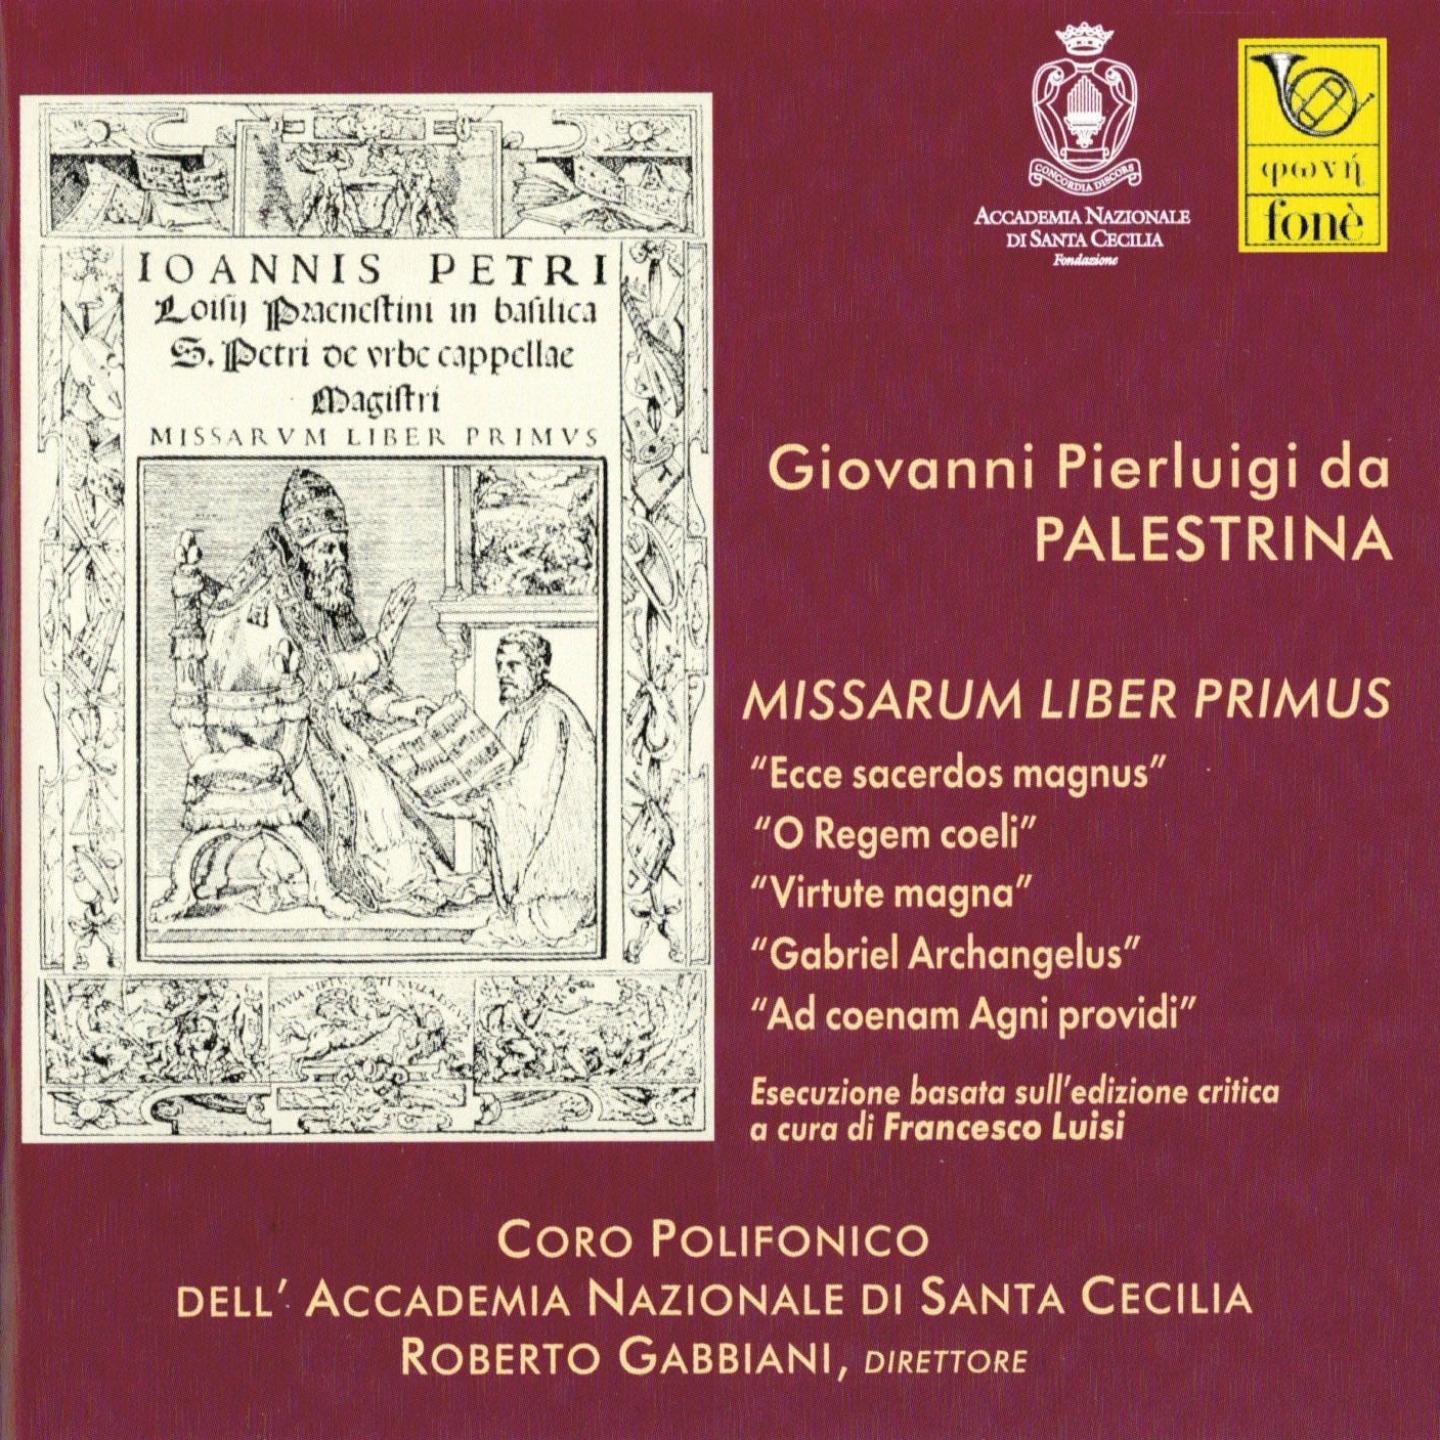 Missa 1, Ecce sacerdos magnus: Gloria